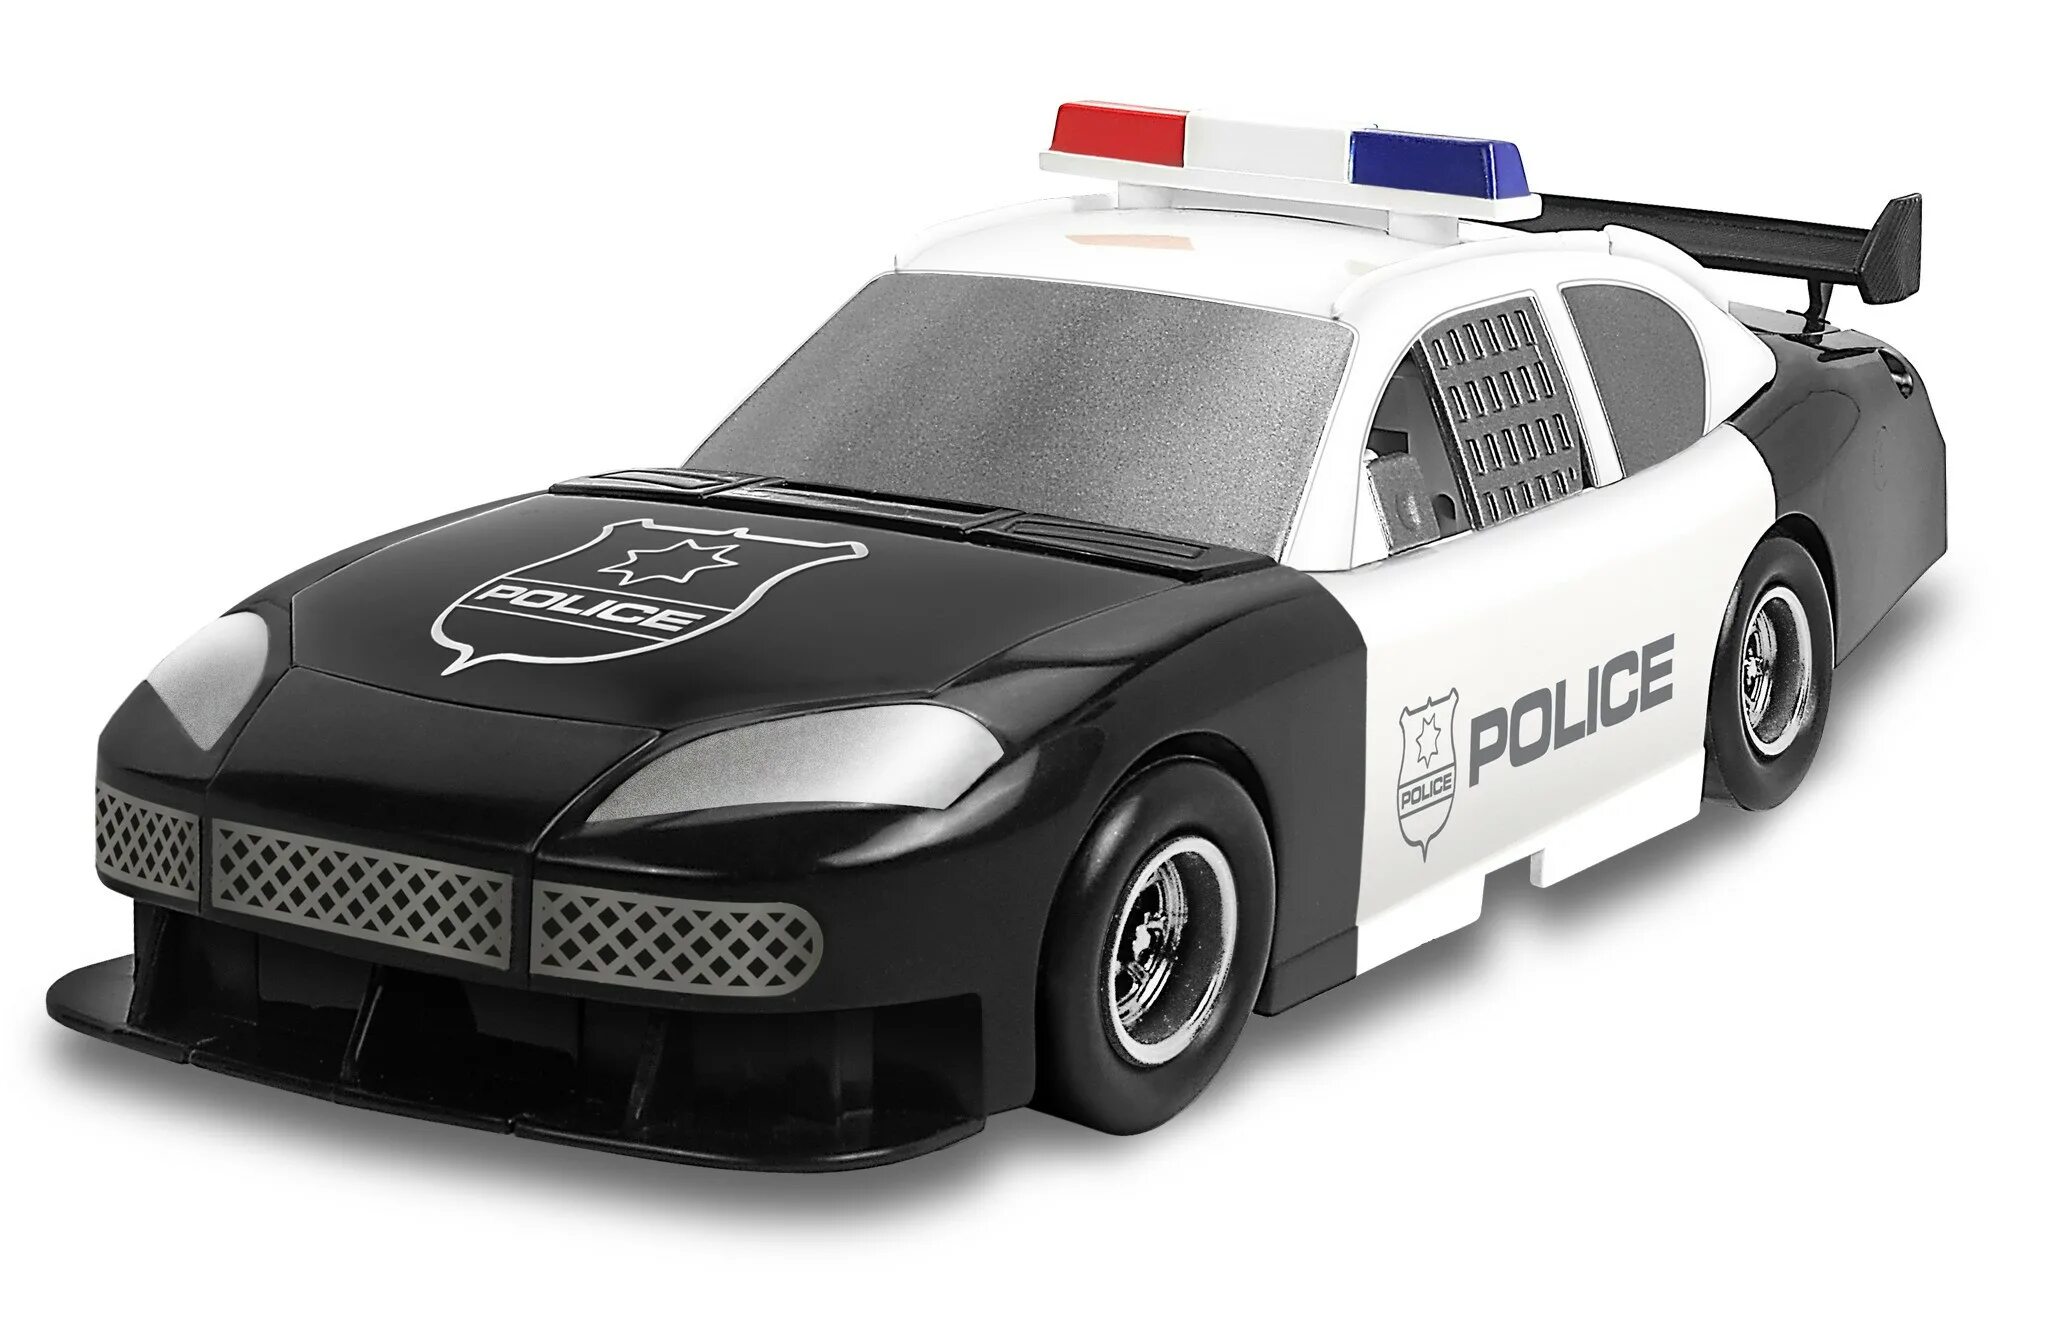 Трансформер Happy well Police car 80030. Bandai 2011 машина трансформер. Bandai машинка 2011 Полицейская трансформер. Робот полицейский игрушка. Трансформер полицейская машина